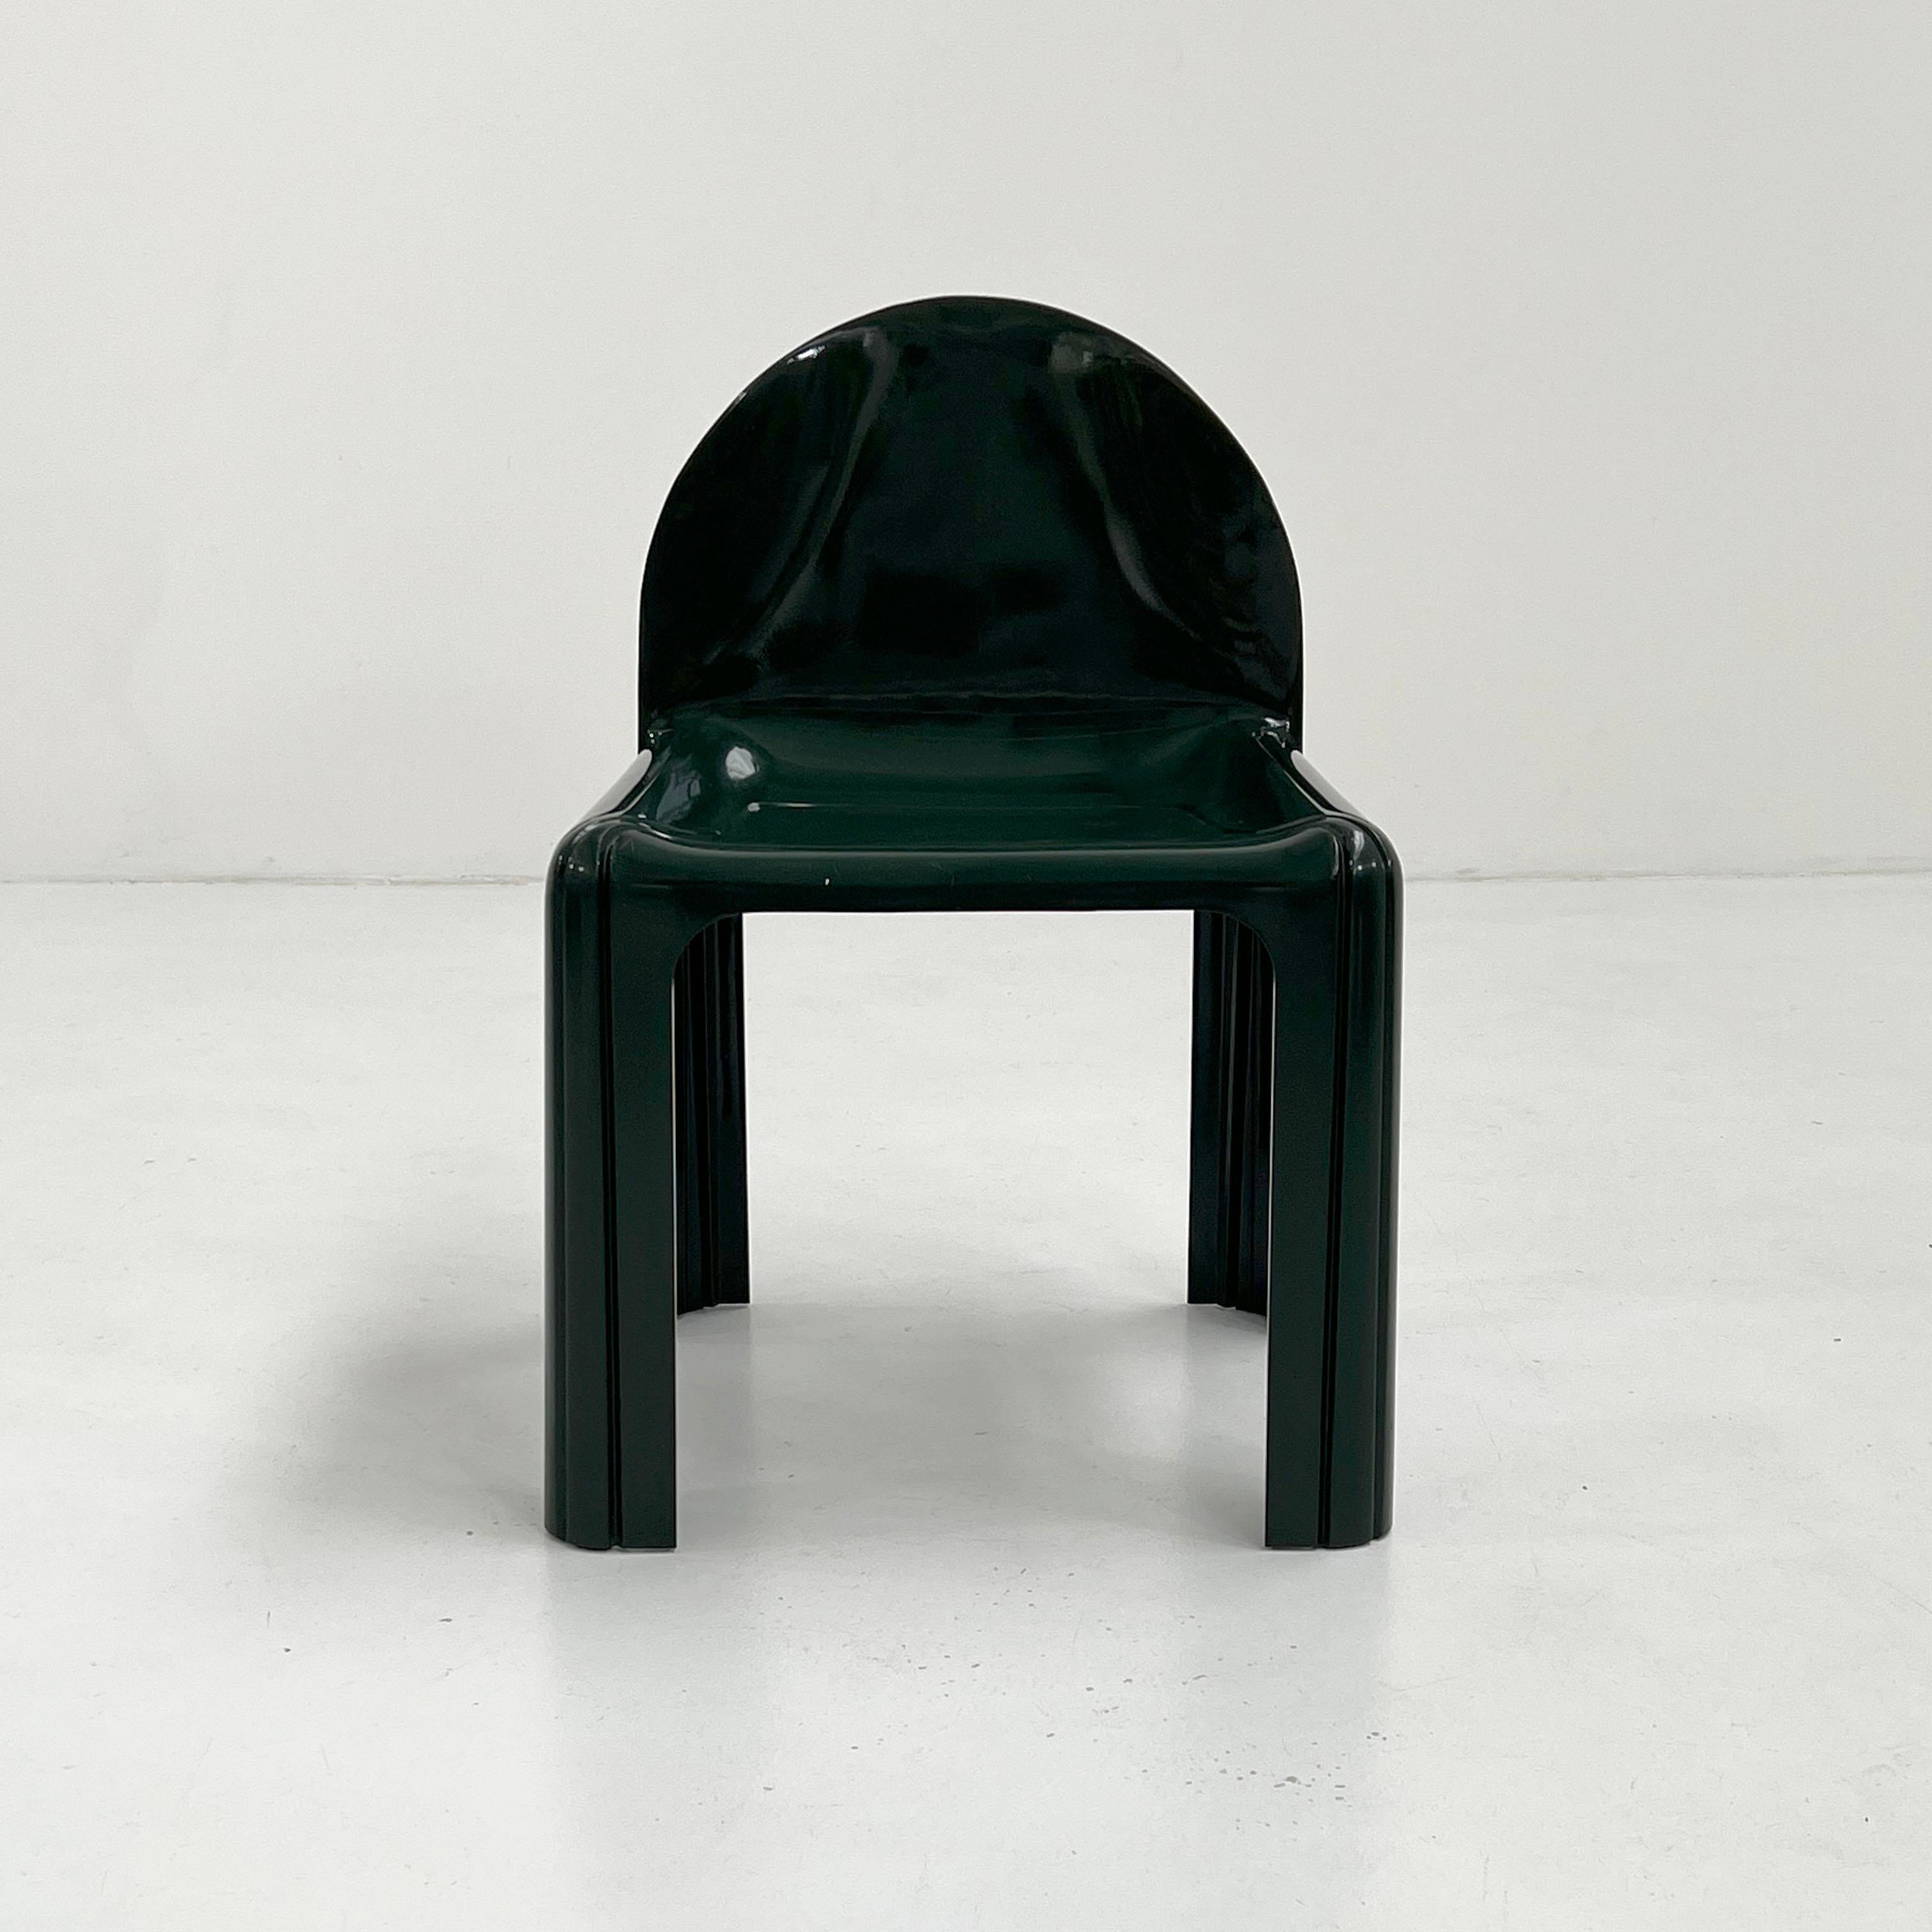 Italian Dark Green Model 4854 Chair by Gae Aulenti for Kartell, 1970s